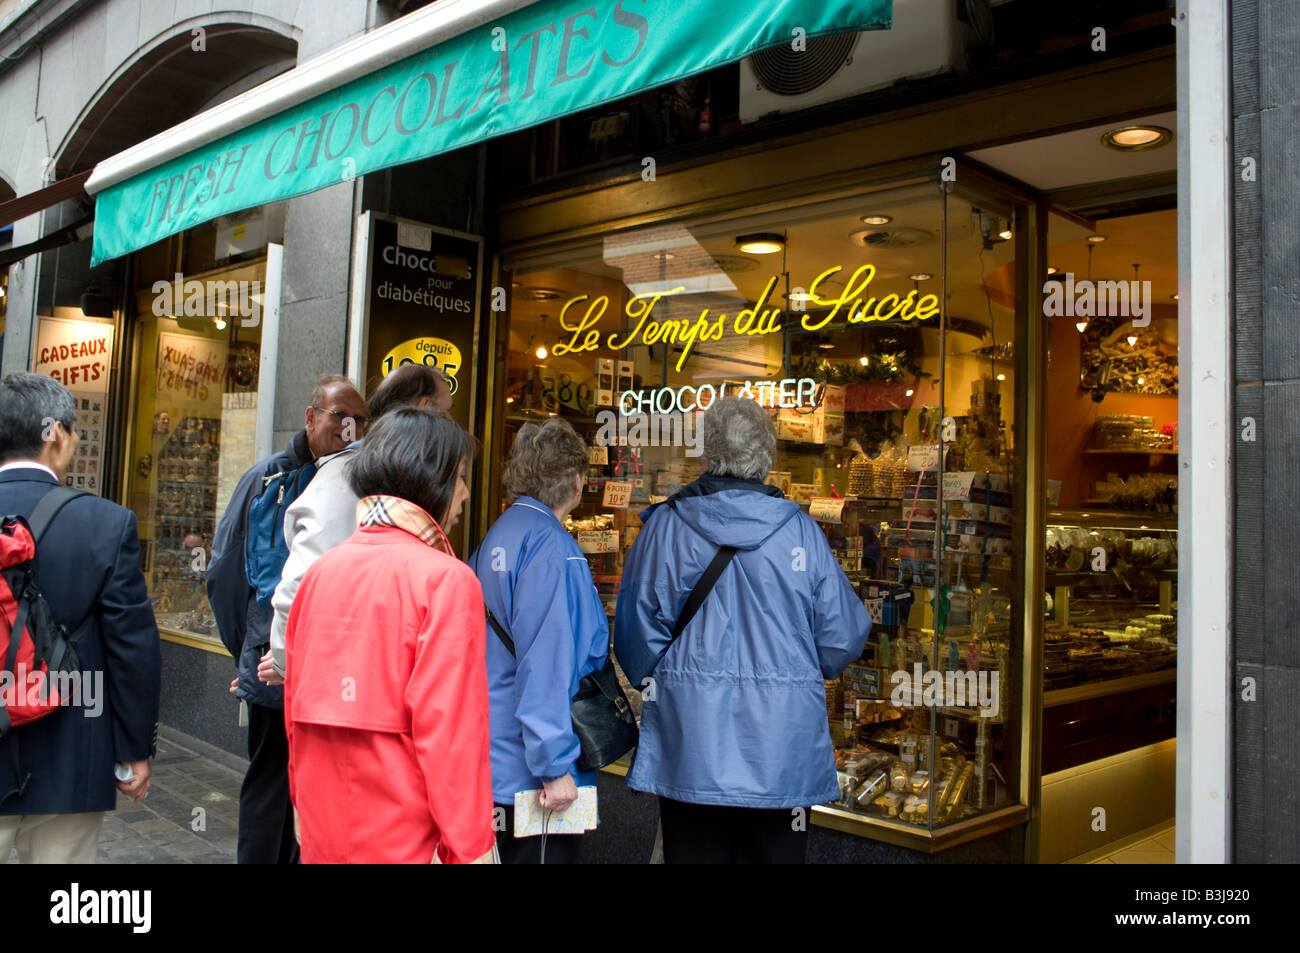 Les touristes à la recherche d'une vitrine, Bruxelles, Belgique Banque D'Images